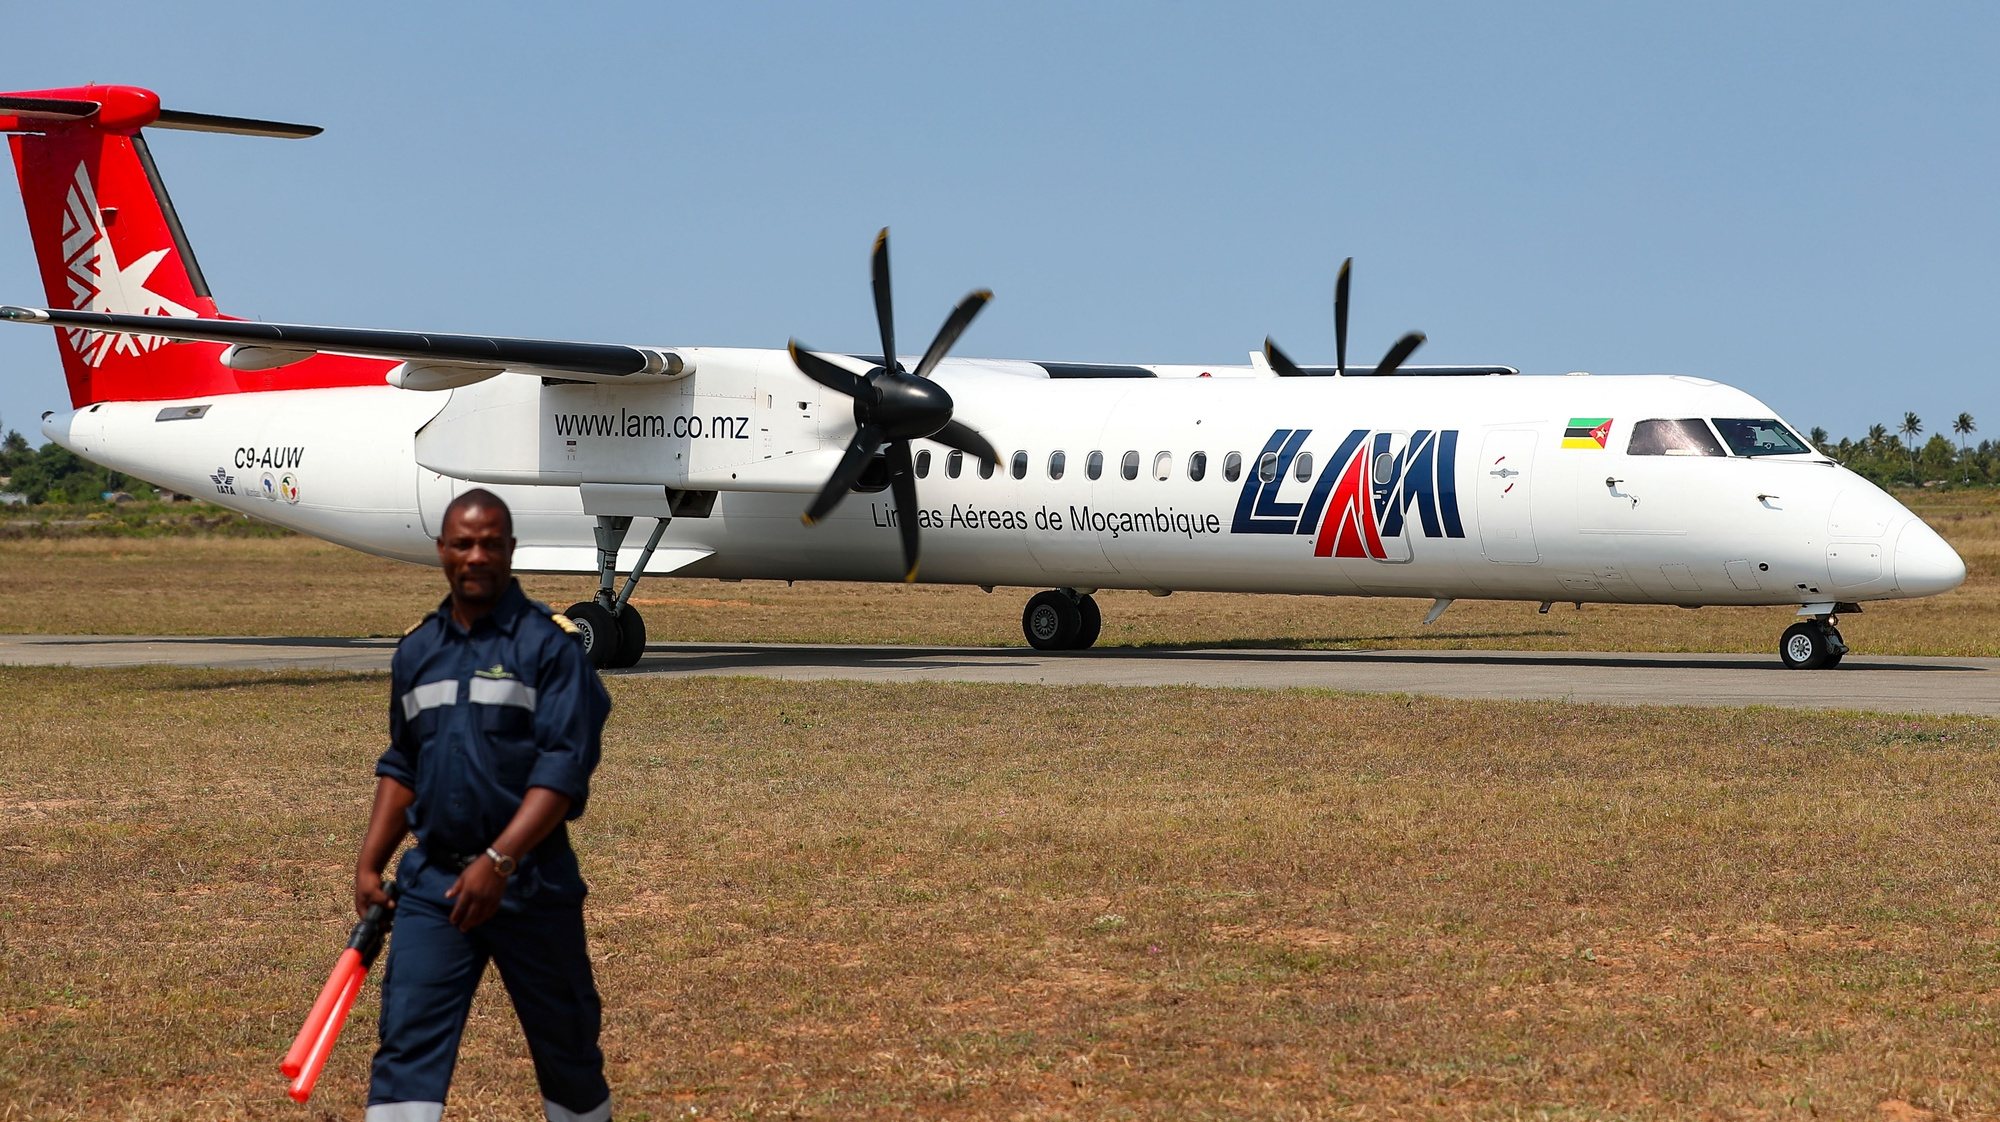 Avião das Linhas Aéreas de Moçambique (LAM), que passa a ligar Joanesburgo, na África do Sul, a Vilanculo, na província de Inhambane, um dos principais pontos turísticos de Moçambique, no Aeroporto de Inhambane, Moçambique, 29 de setembro de 2023. De acordo com informação comercial divulgada pela transportadora aérea, o primeiro desses voos diretos acontece já neste dia, operando a companhia ainda ligações às quartas-feiras e aos domingos. LUÍSA NHANTUMBO/LUSA